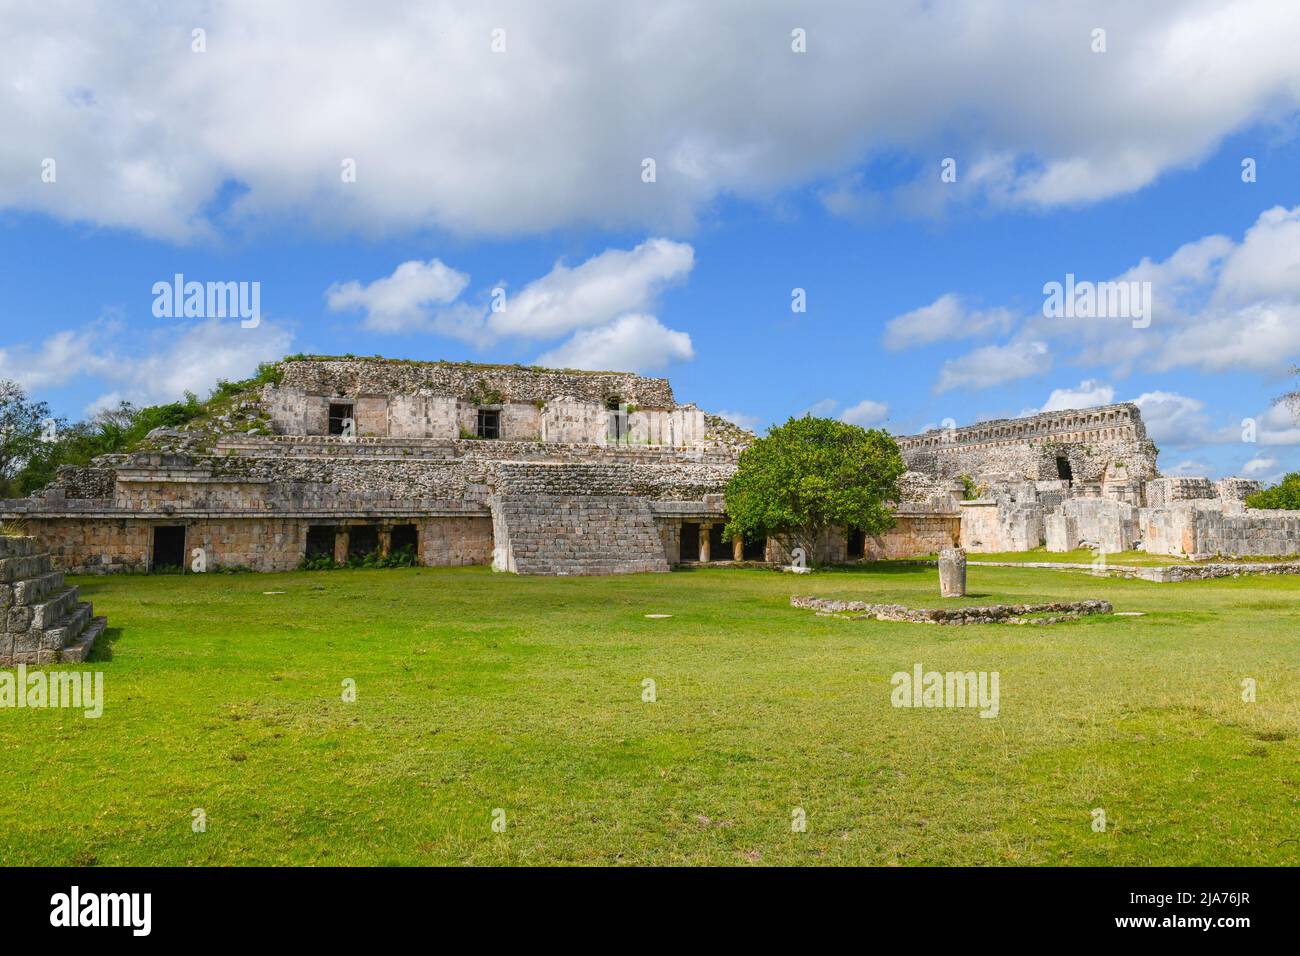 The Mayan ruins of Kabah, Yucatan Mexico Stock Photo